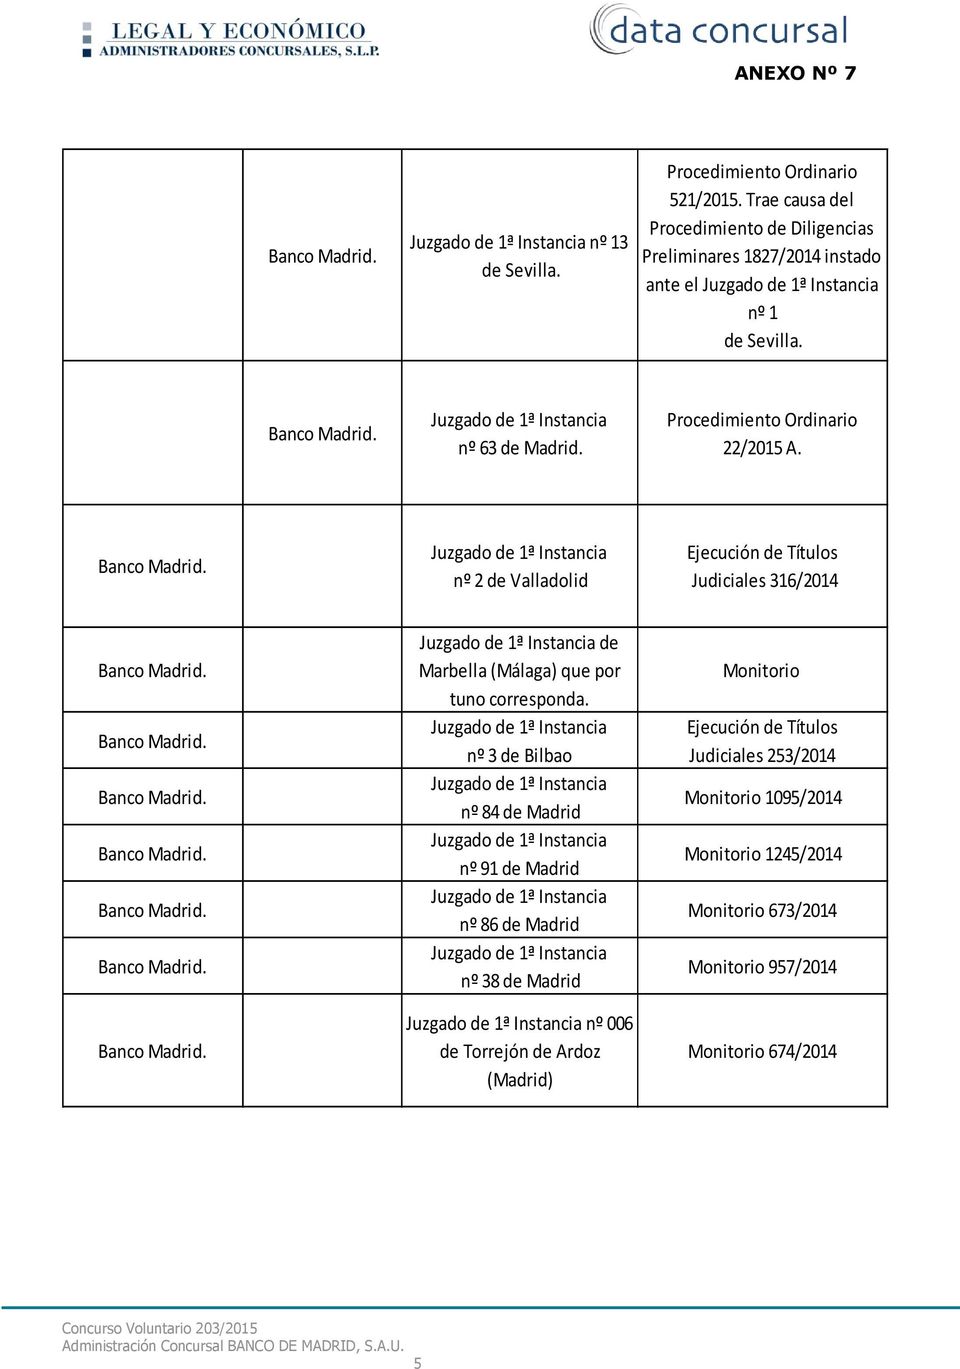 22/2015 A. nº 2 de Valladolid Judiciales 316/2014 de Marbella (Málaga) que por tuno corresponda.